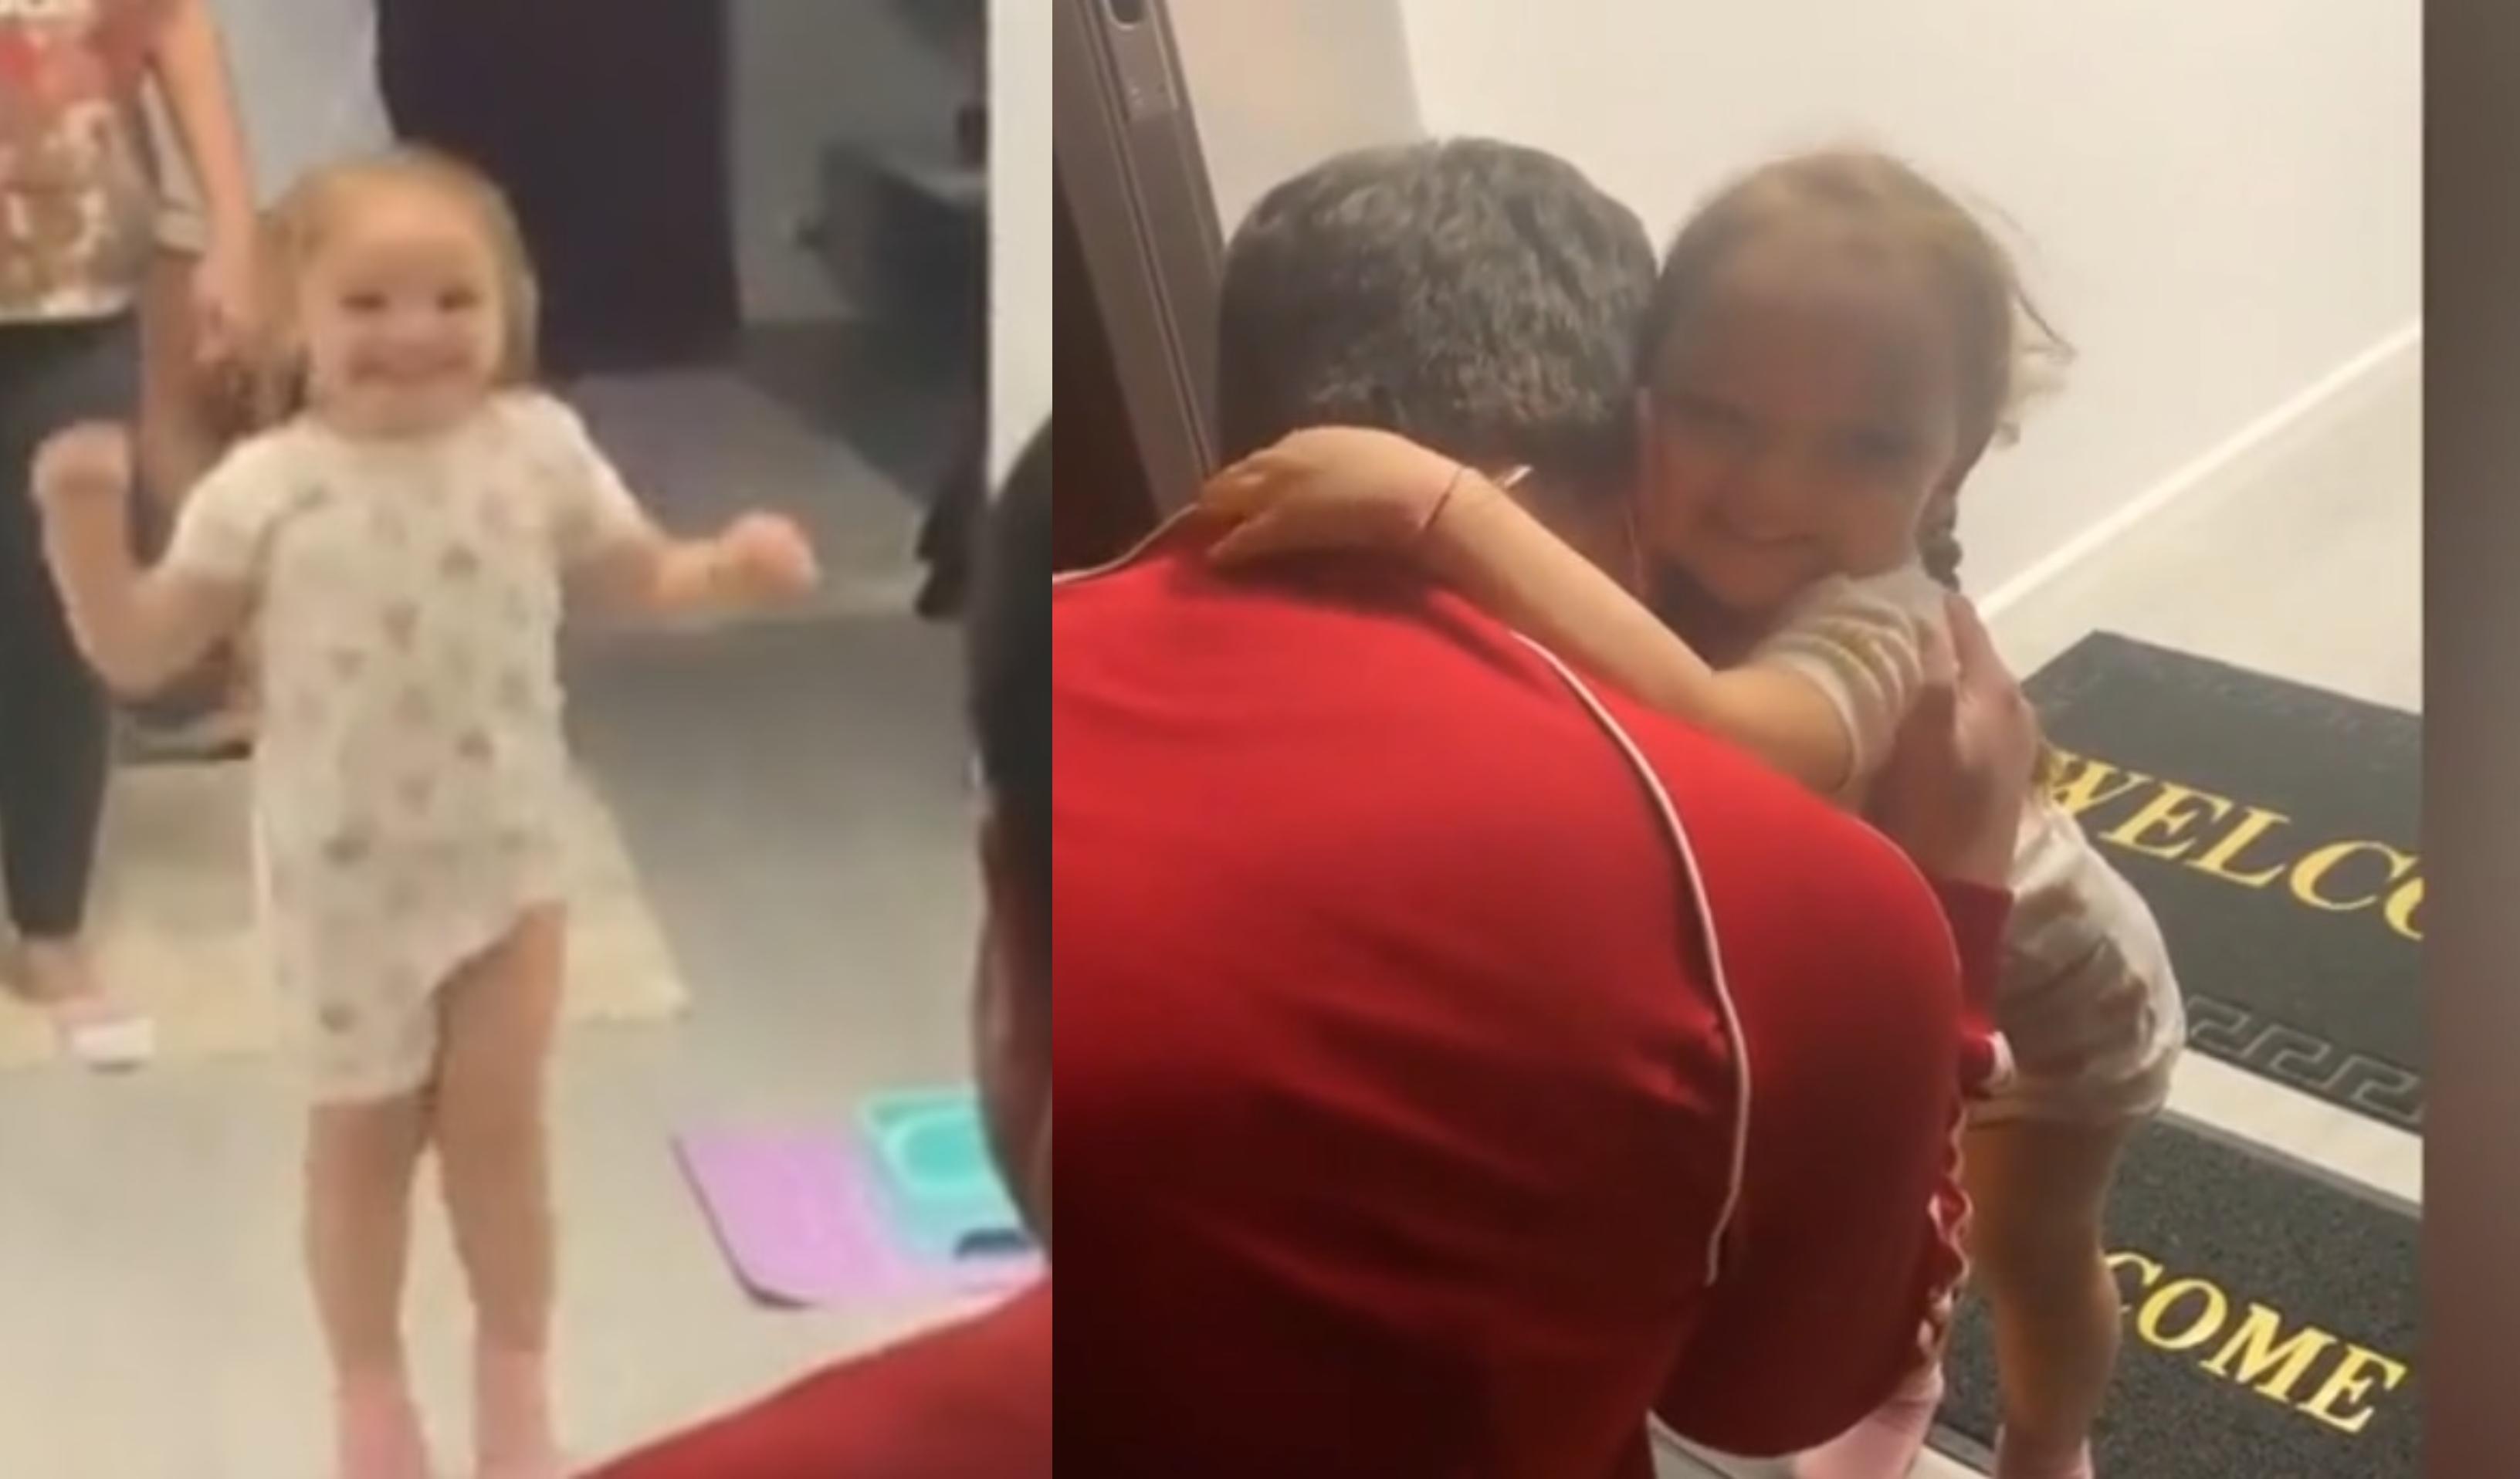 Video | Bucurie până la lacrimi! "Taaaati, ai veeniittt!!"  Reația unei fetițe din România când și-a văzut tatăl ieșit din spital, videcat de coronavirus